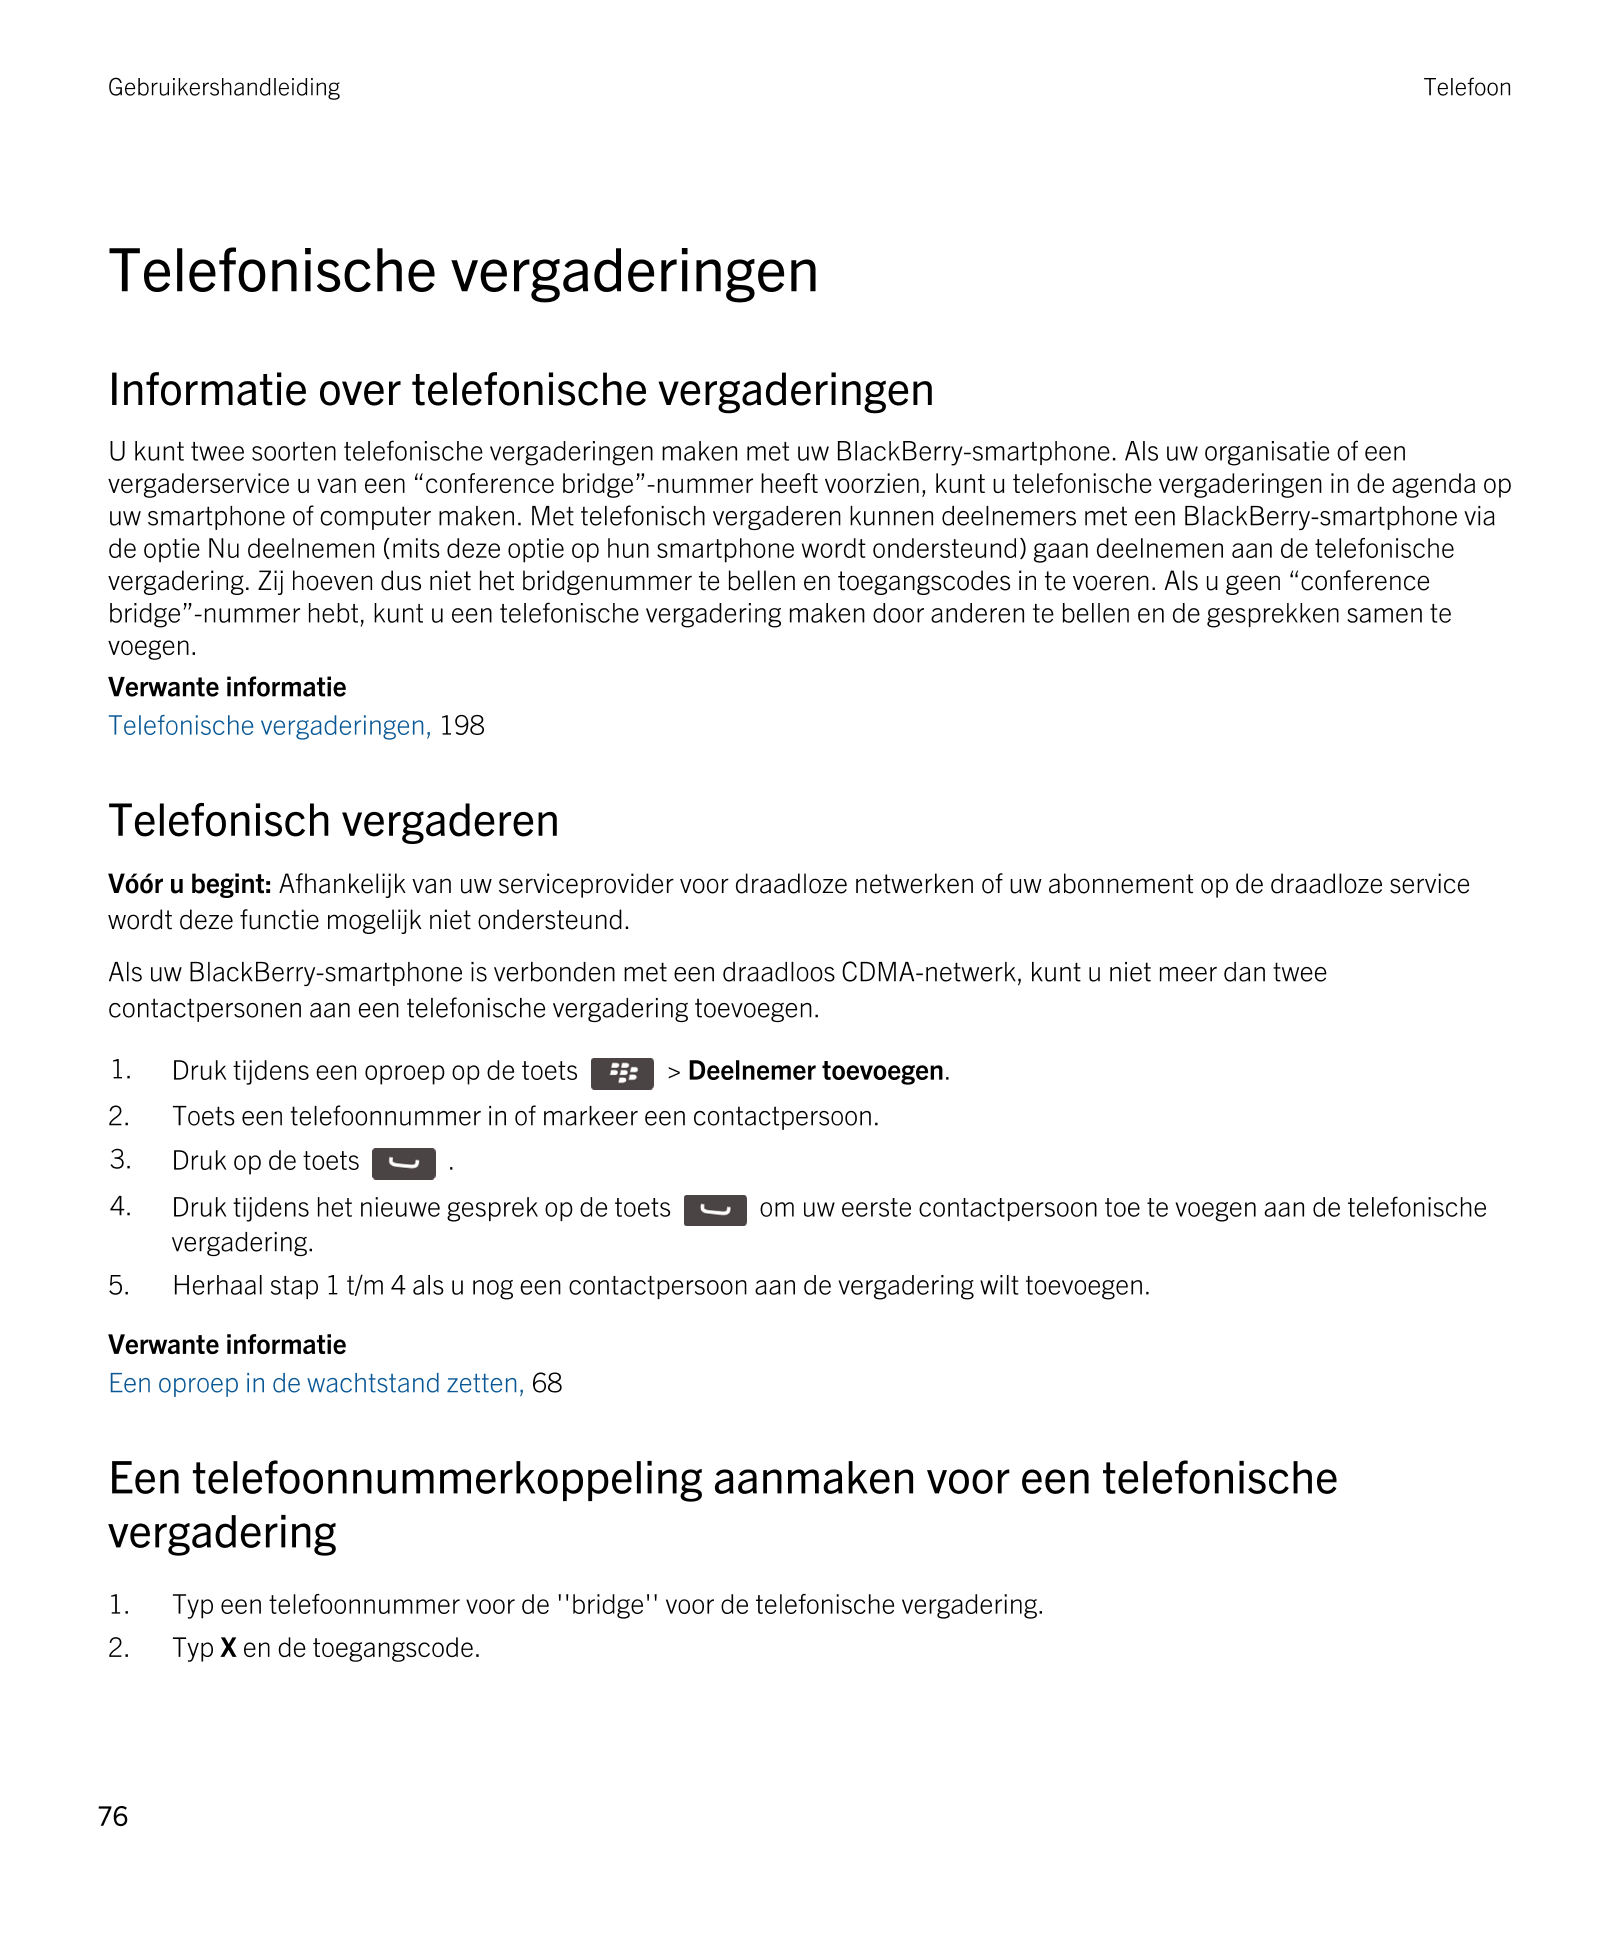 Gebruikershandleiding Telefoon
Telefonische vergaderingen
Informatie over telefonische vergaderingen
U kunt twee soorten telefon